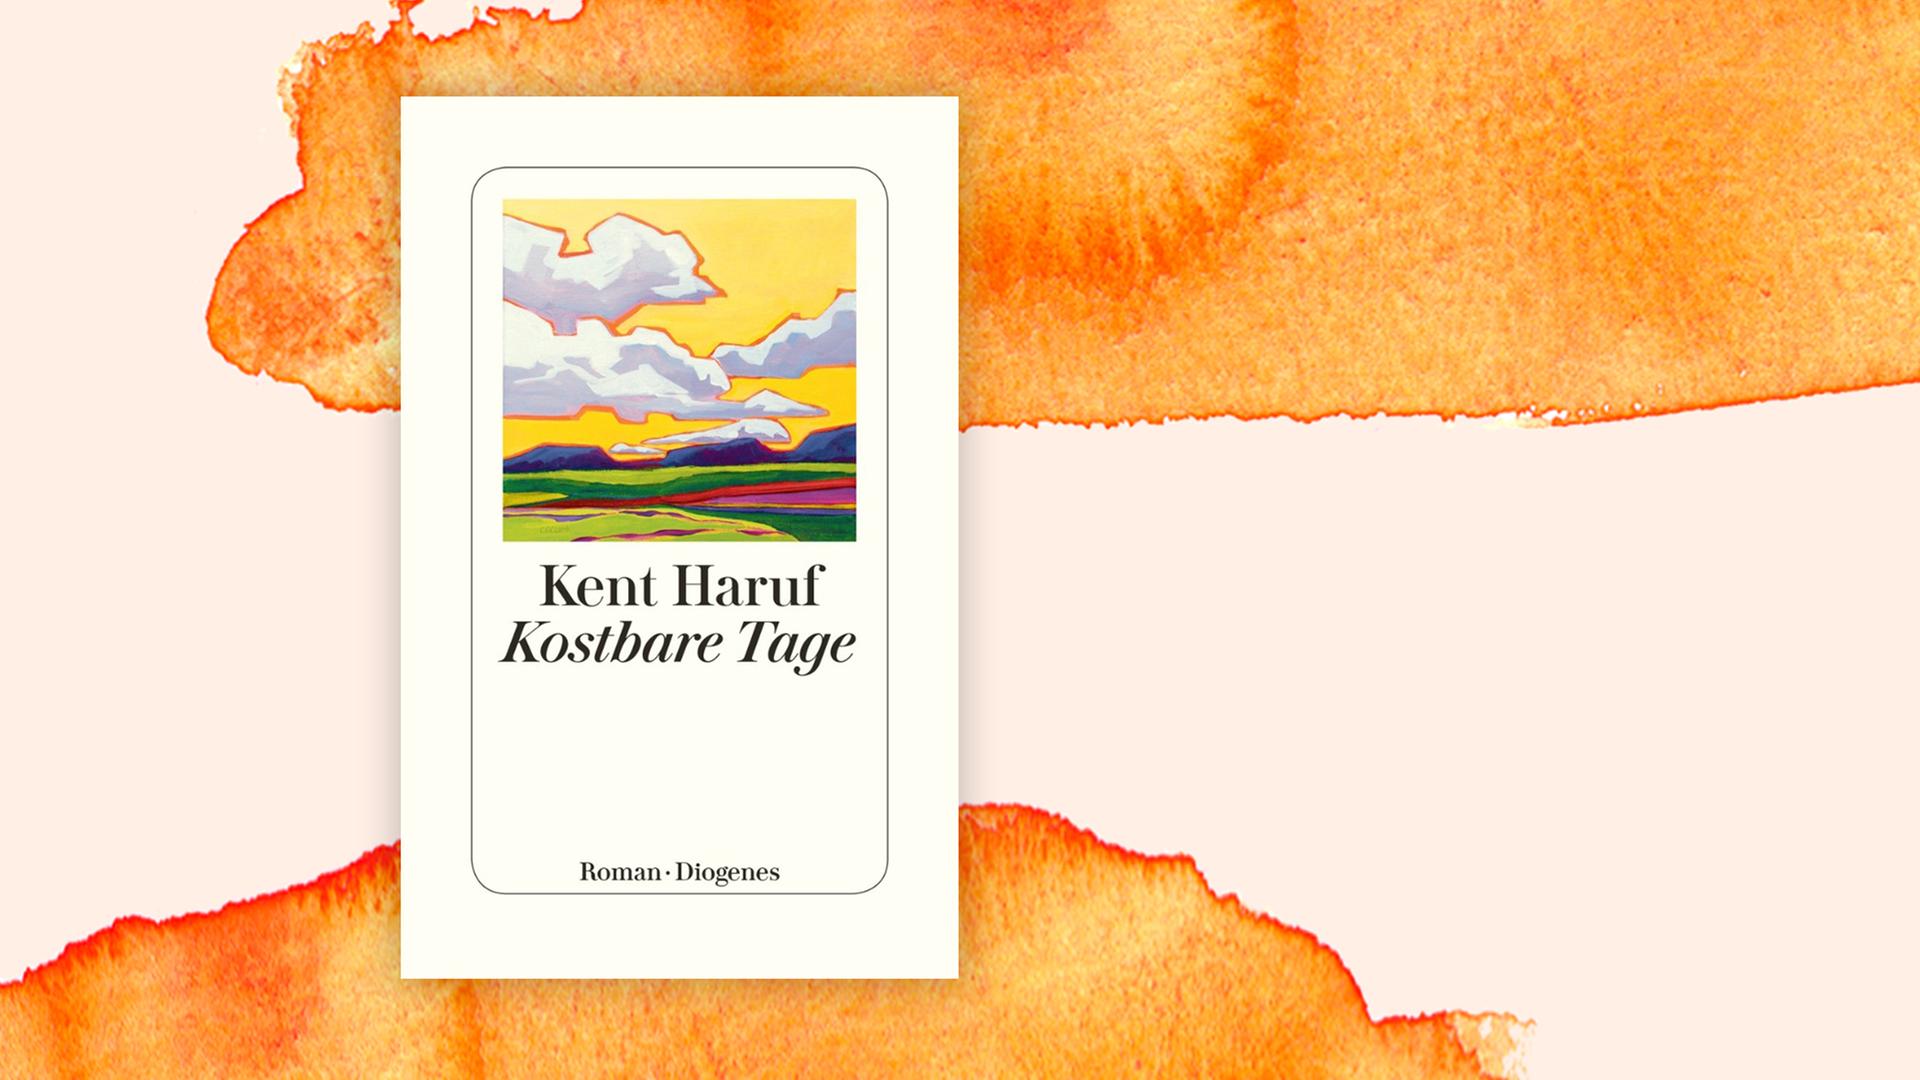 Das Buchcover von Kent Harufs "Kostbare Tage" vor einem Aquarell-Hintergrund. Auf dem Cover ist die Zeichnung einer Landschaft mit grünen Feldern, blauen Bergen, weißen Wolken und einem gelben Himmel zu sehen.